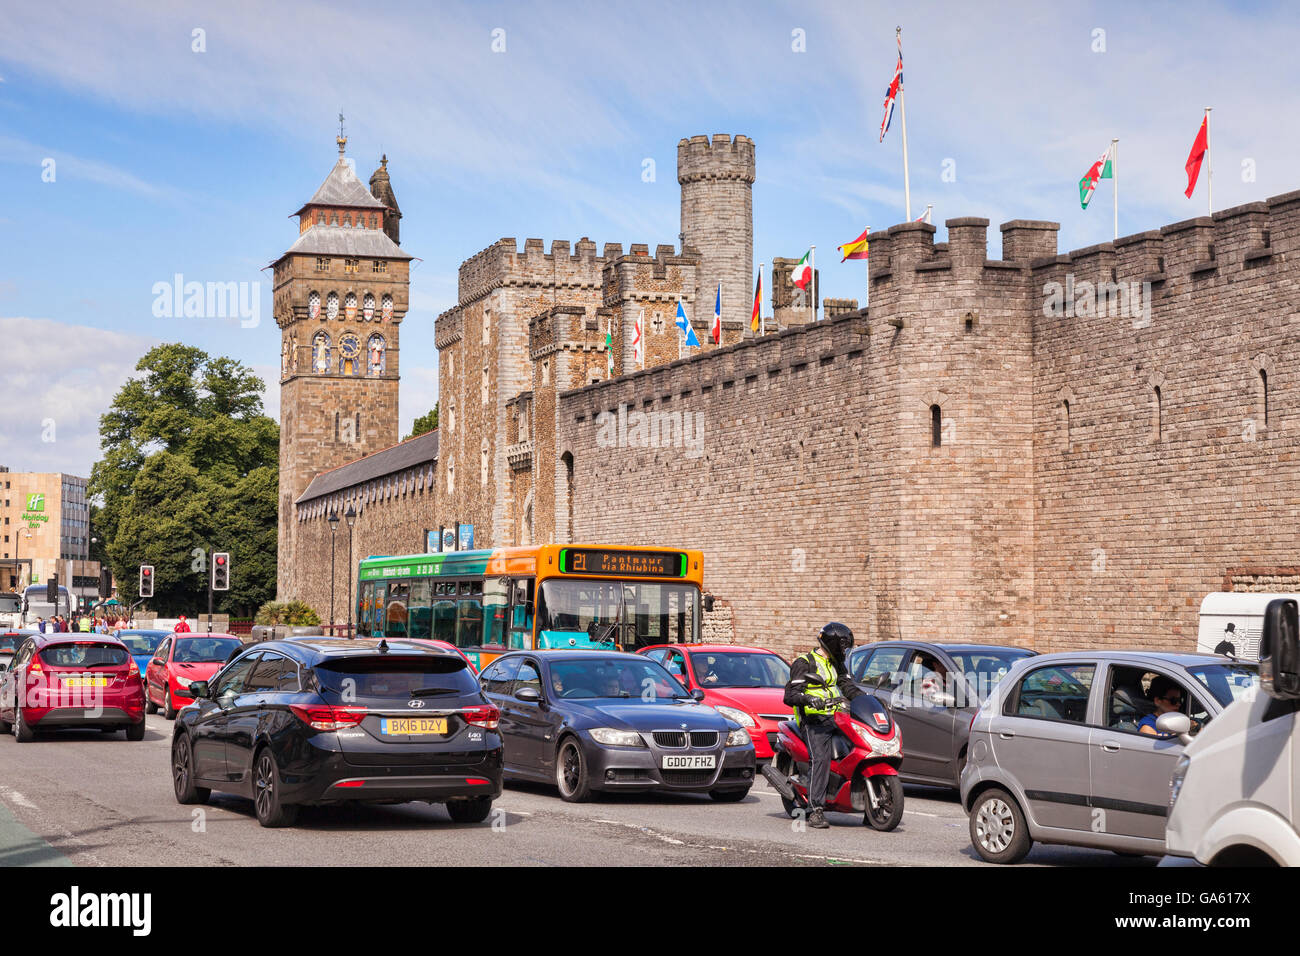 27 Giugno 2016: Cardiff Wales, Regno Unito - Traffico alondgside il Castello di Cardiff, Cardiff Wales, Regno Unito Foto Stock